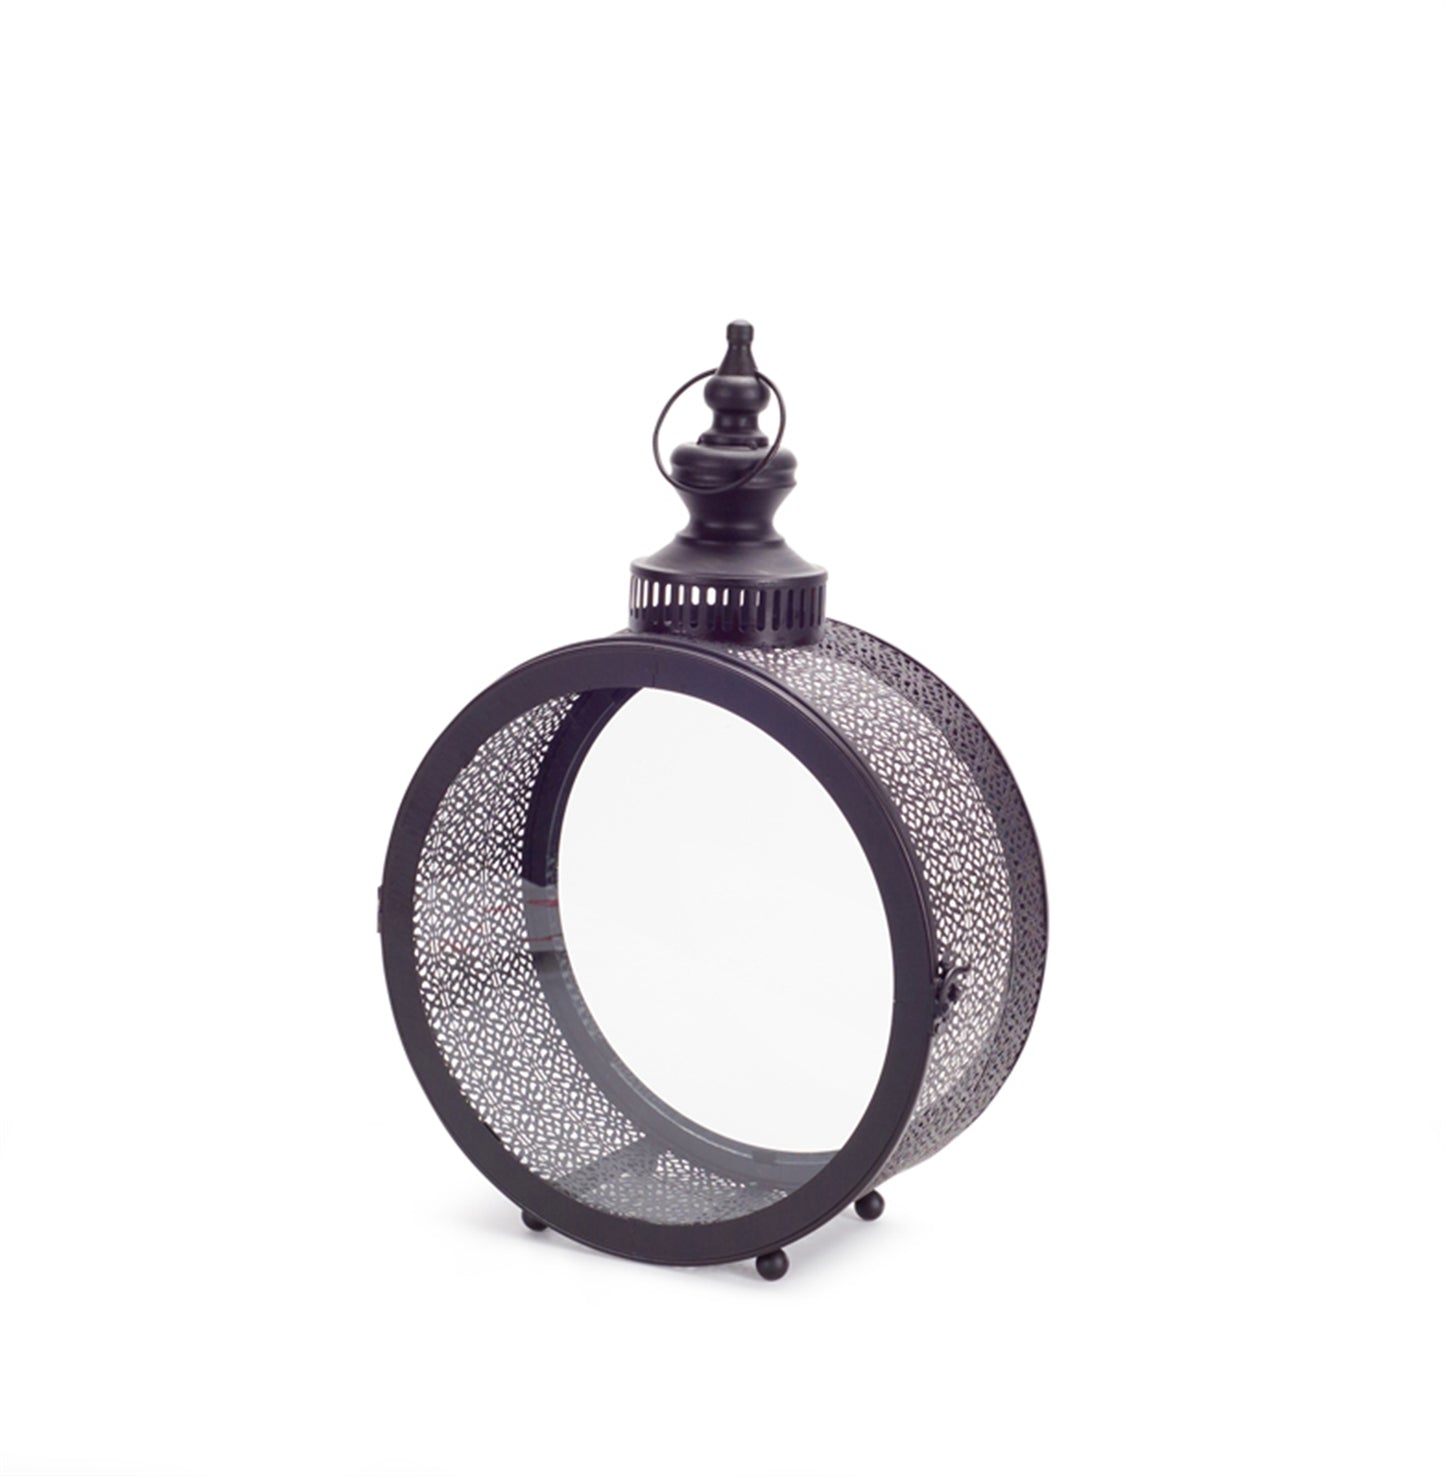 Black Ornate Metal Circle Lantern 17.5"D